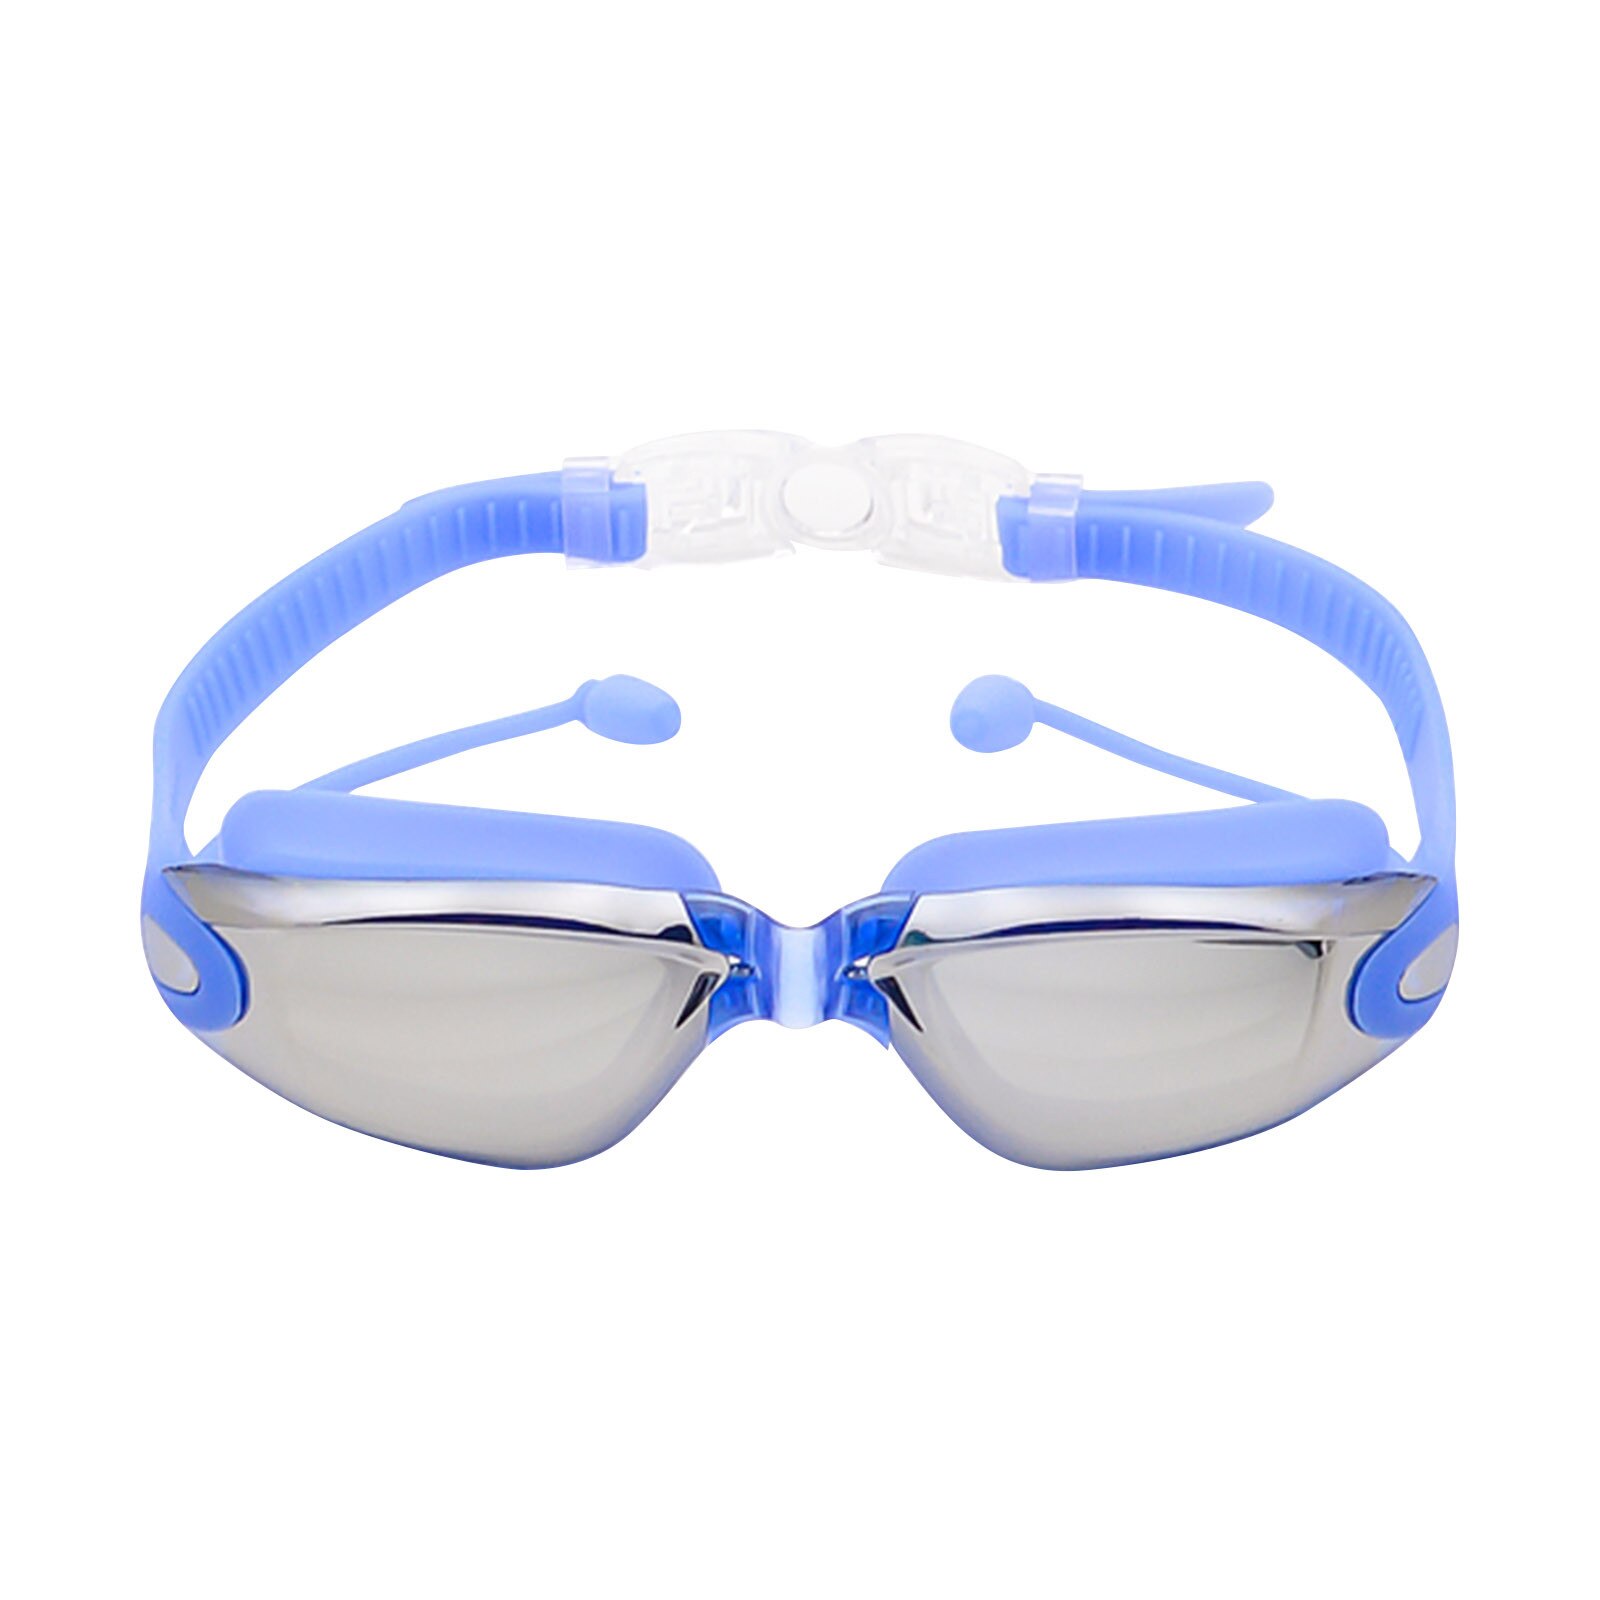 2 In 1 Volwassen Hd Waterdicht En Anti-Fog Siliconen Zwembril Met Oordopjes Anti-Vertigo Duiken Bril voor Beginners: BU